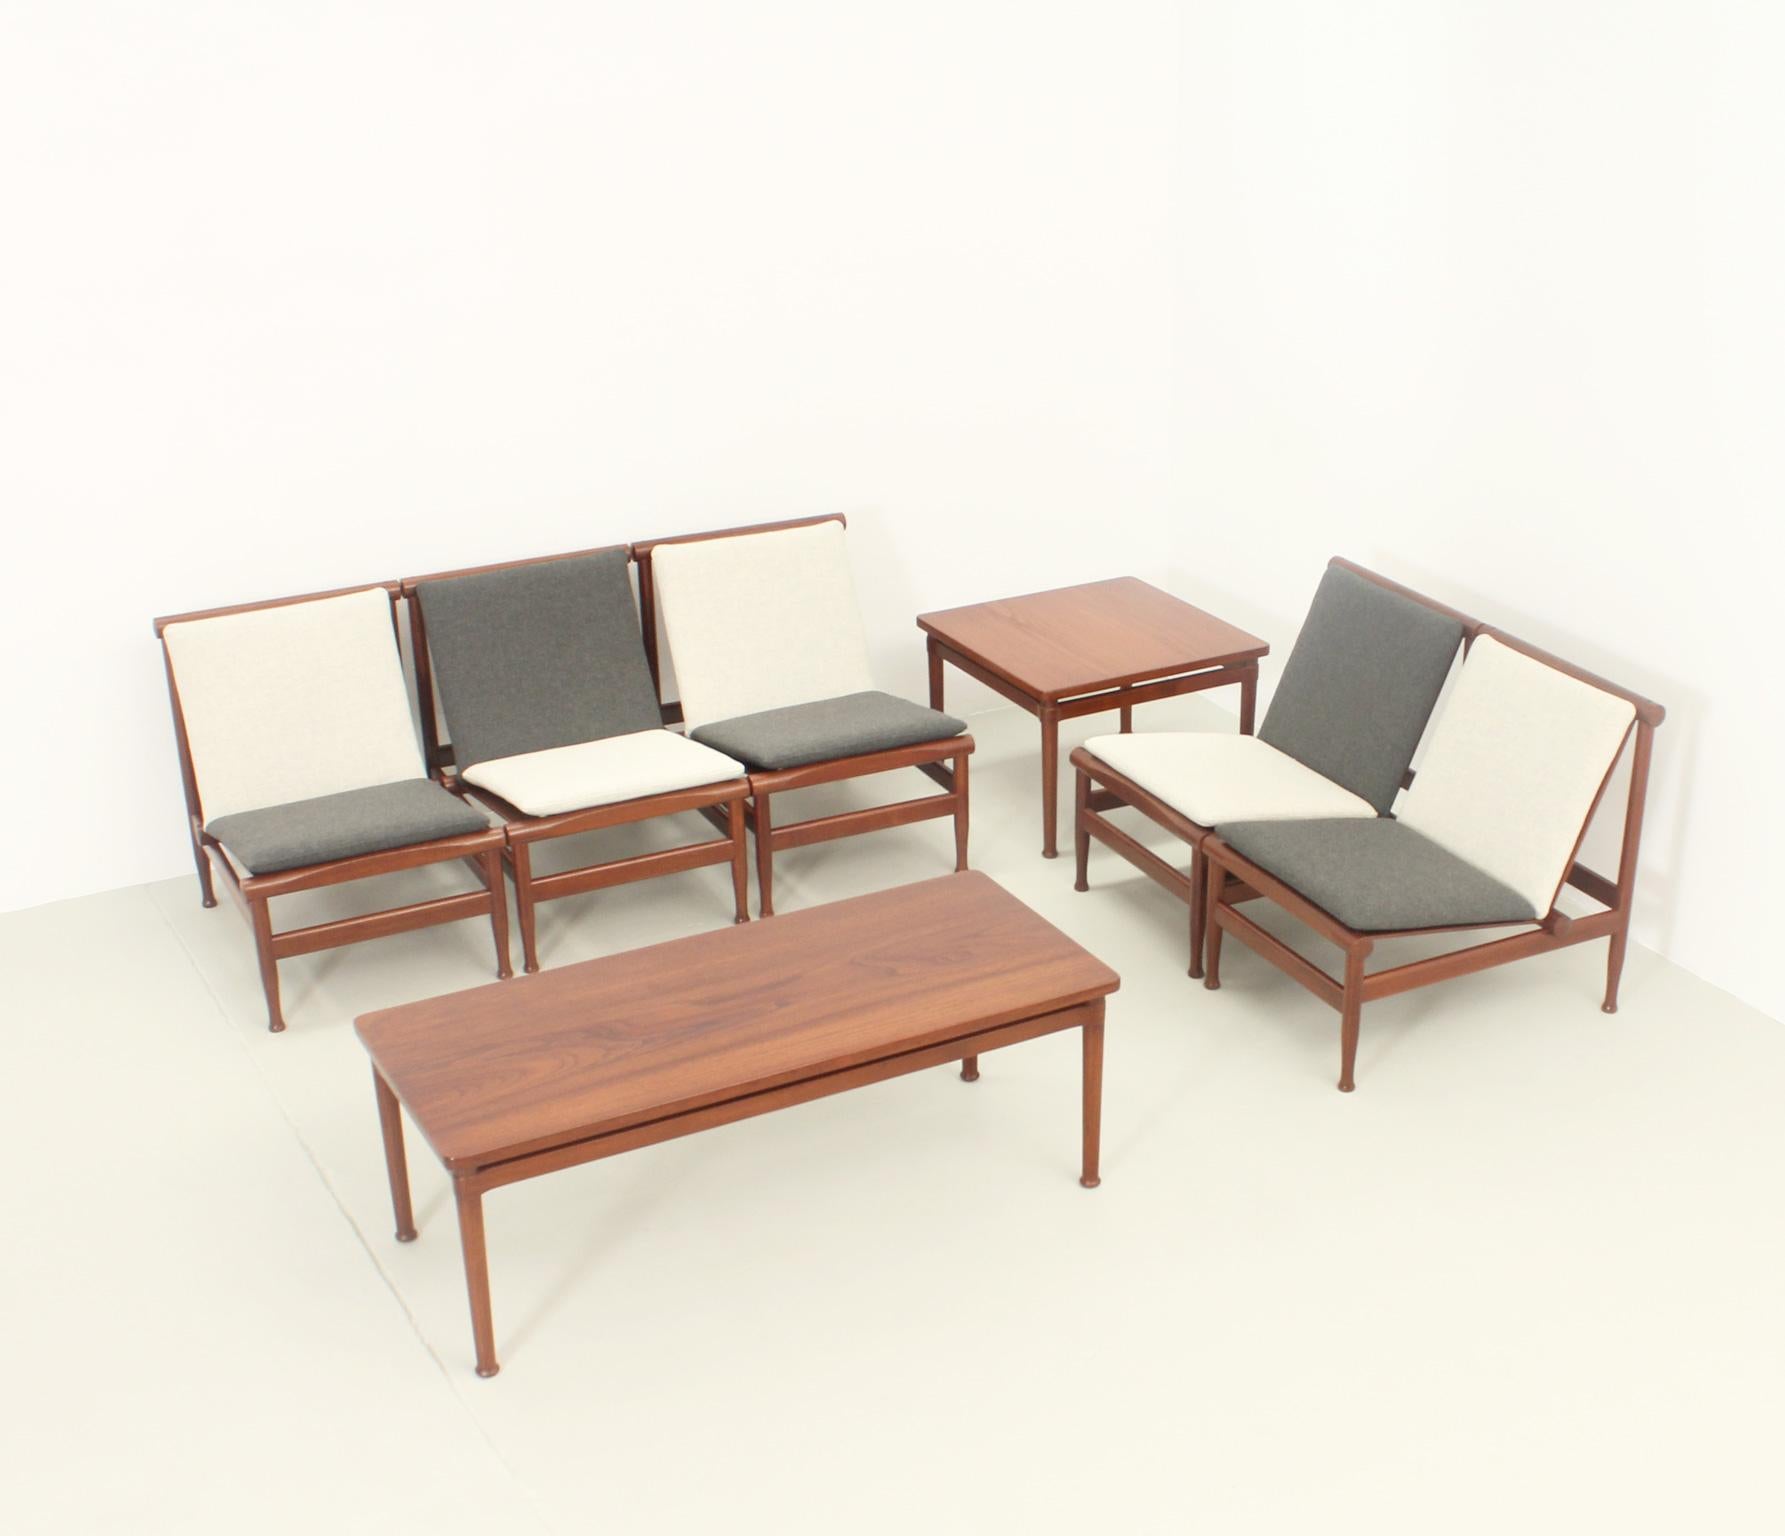 Side Table in Teak Wood by Kai Lyngfeldt Larsen for Søborg, 1950's For Sale 8